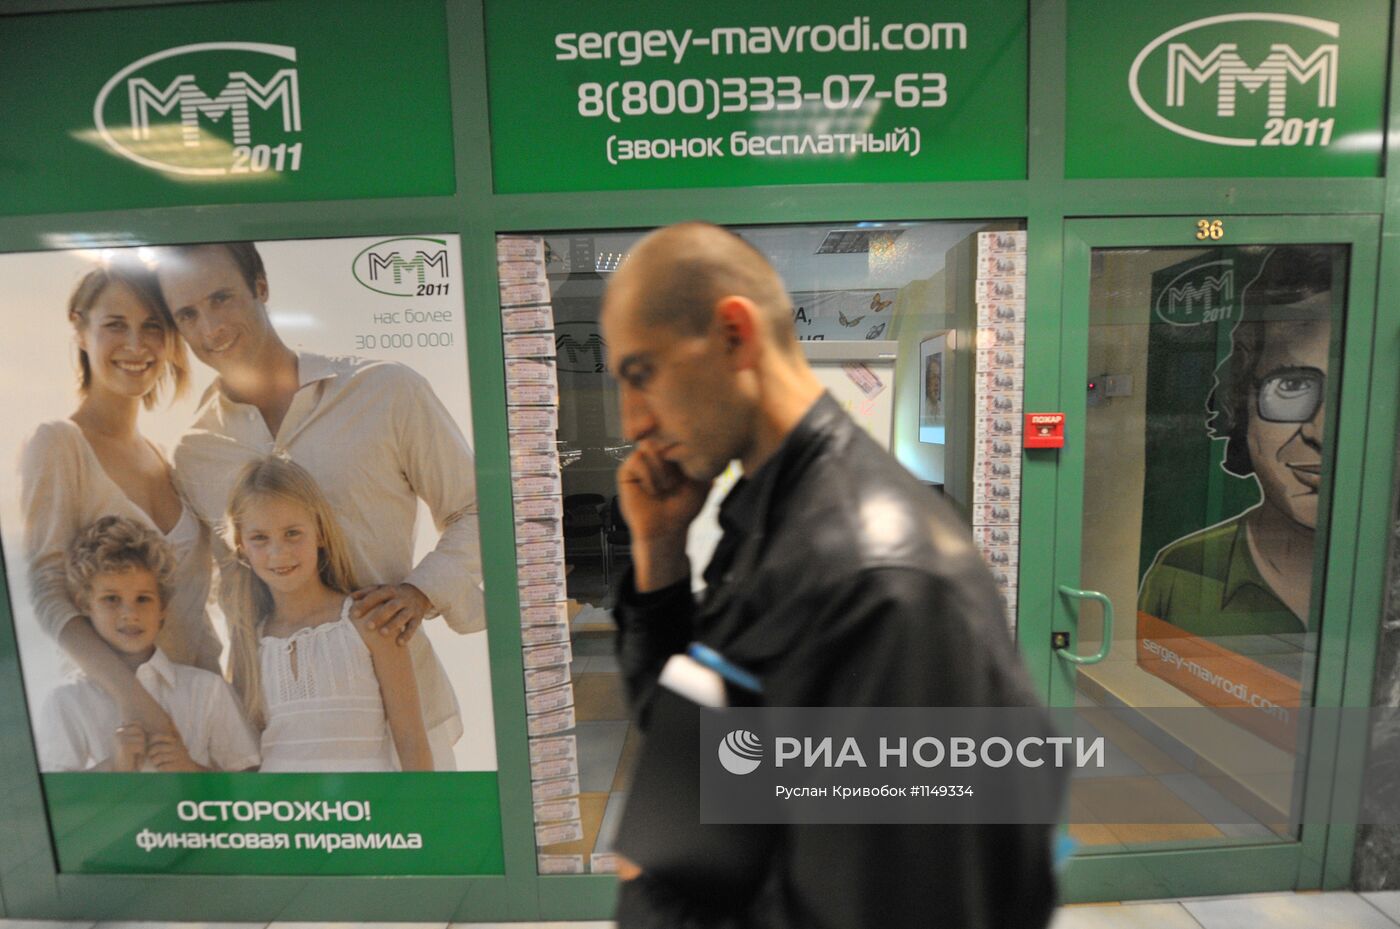 Офис "МММ 2011" у станции метро "Речной вокзал" в Москве